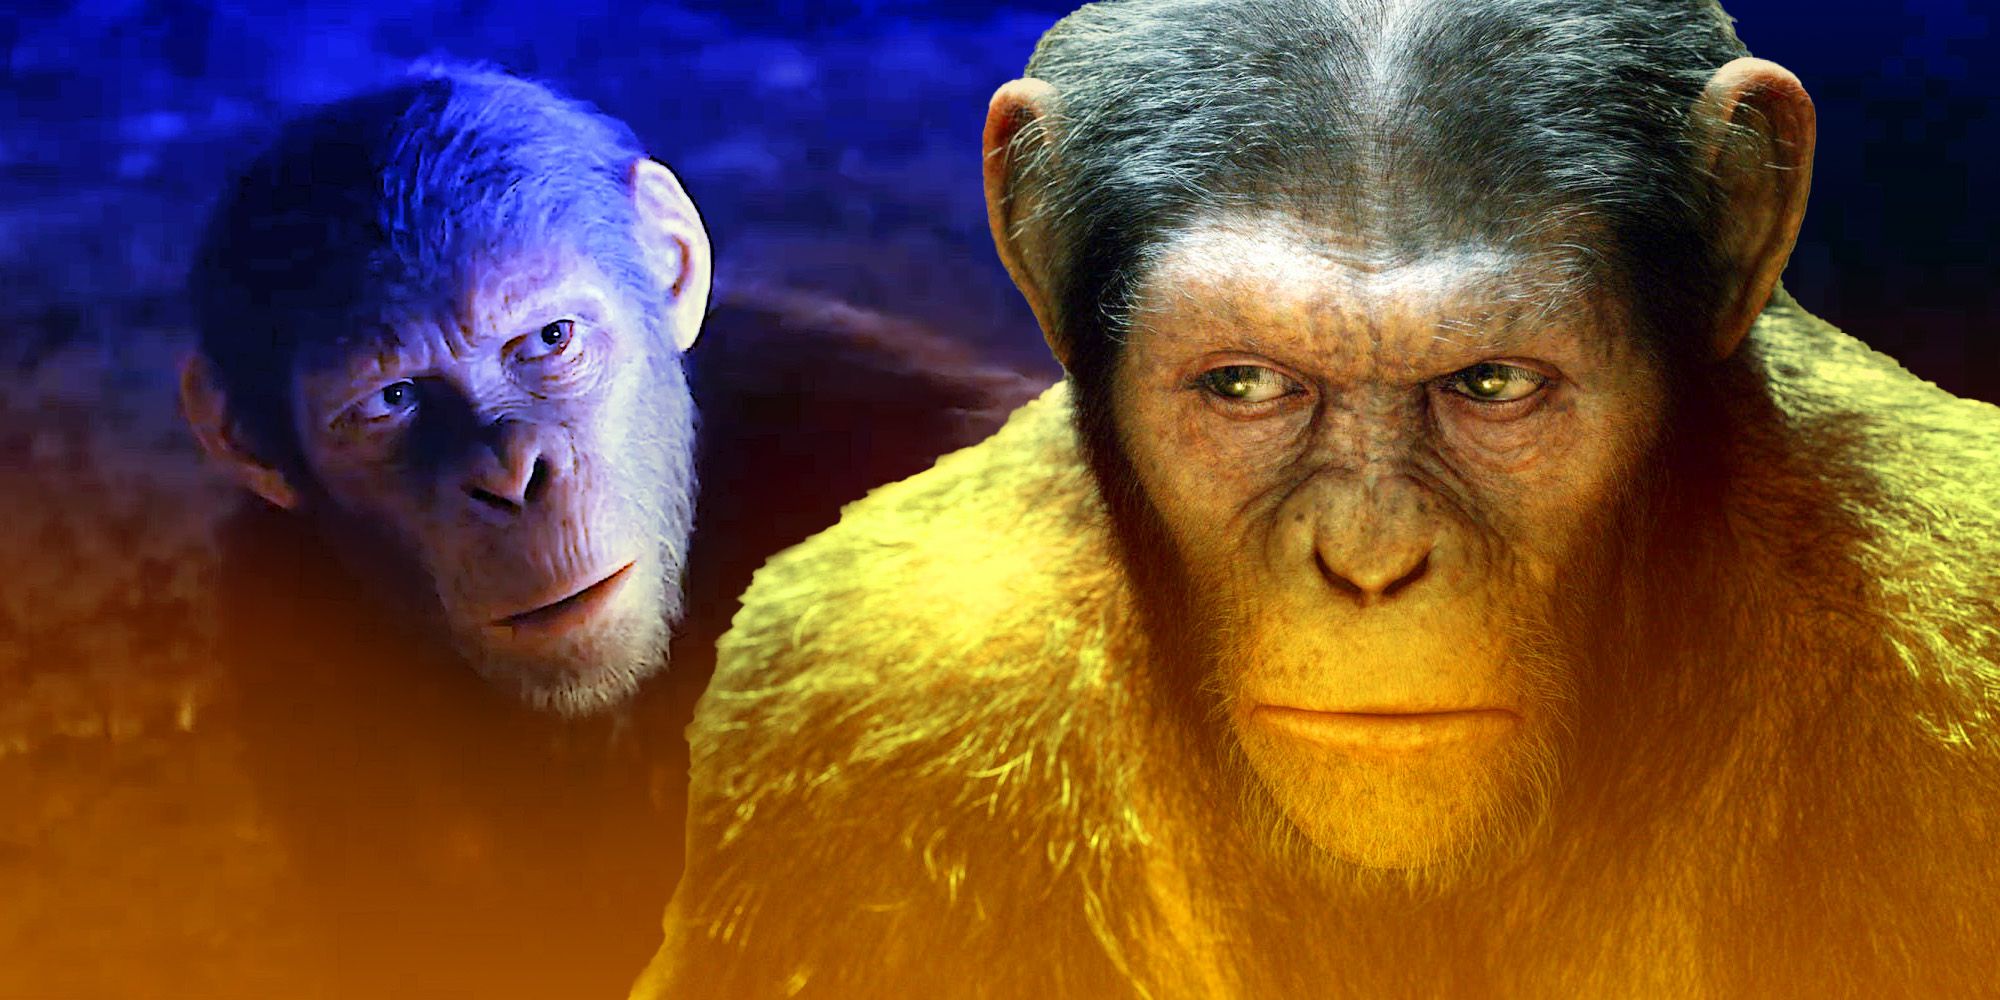 El reino del planeta de los simios insinúa un giro importante 300 años después del reinado de César